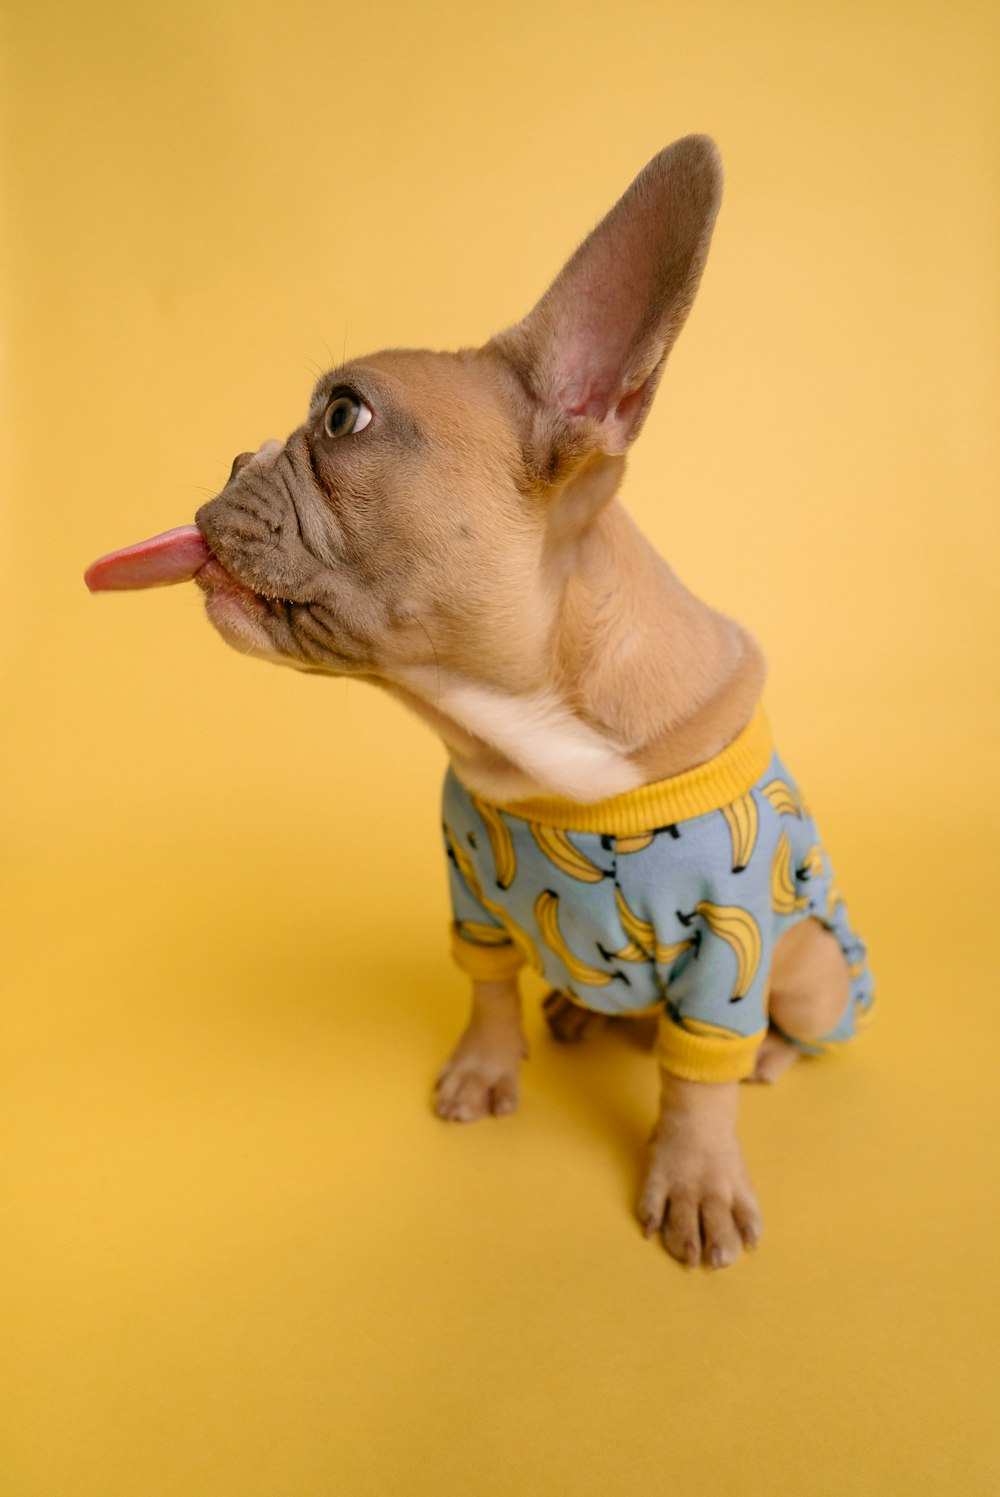 brauner, kurzhaariger kleiner Hund mit blau-weißem Polka-Dot-Shirt